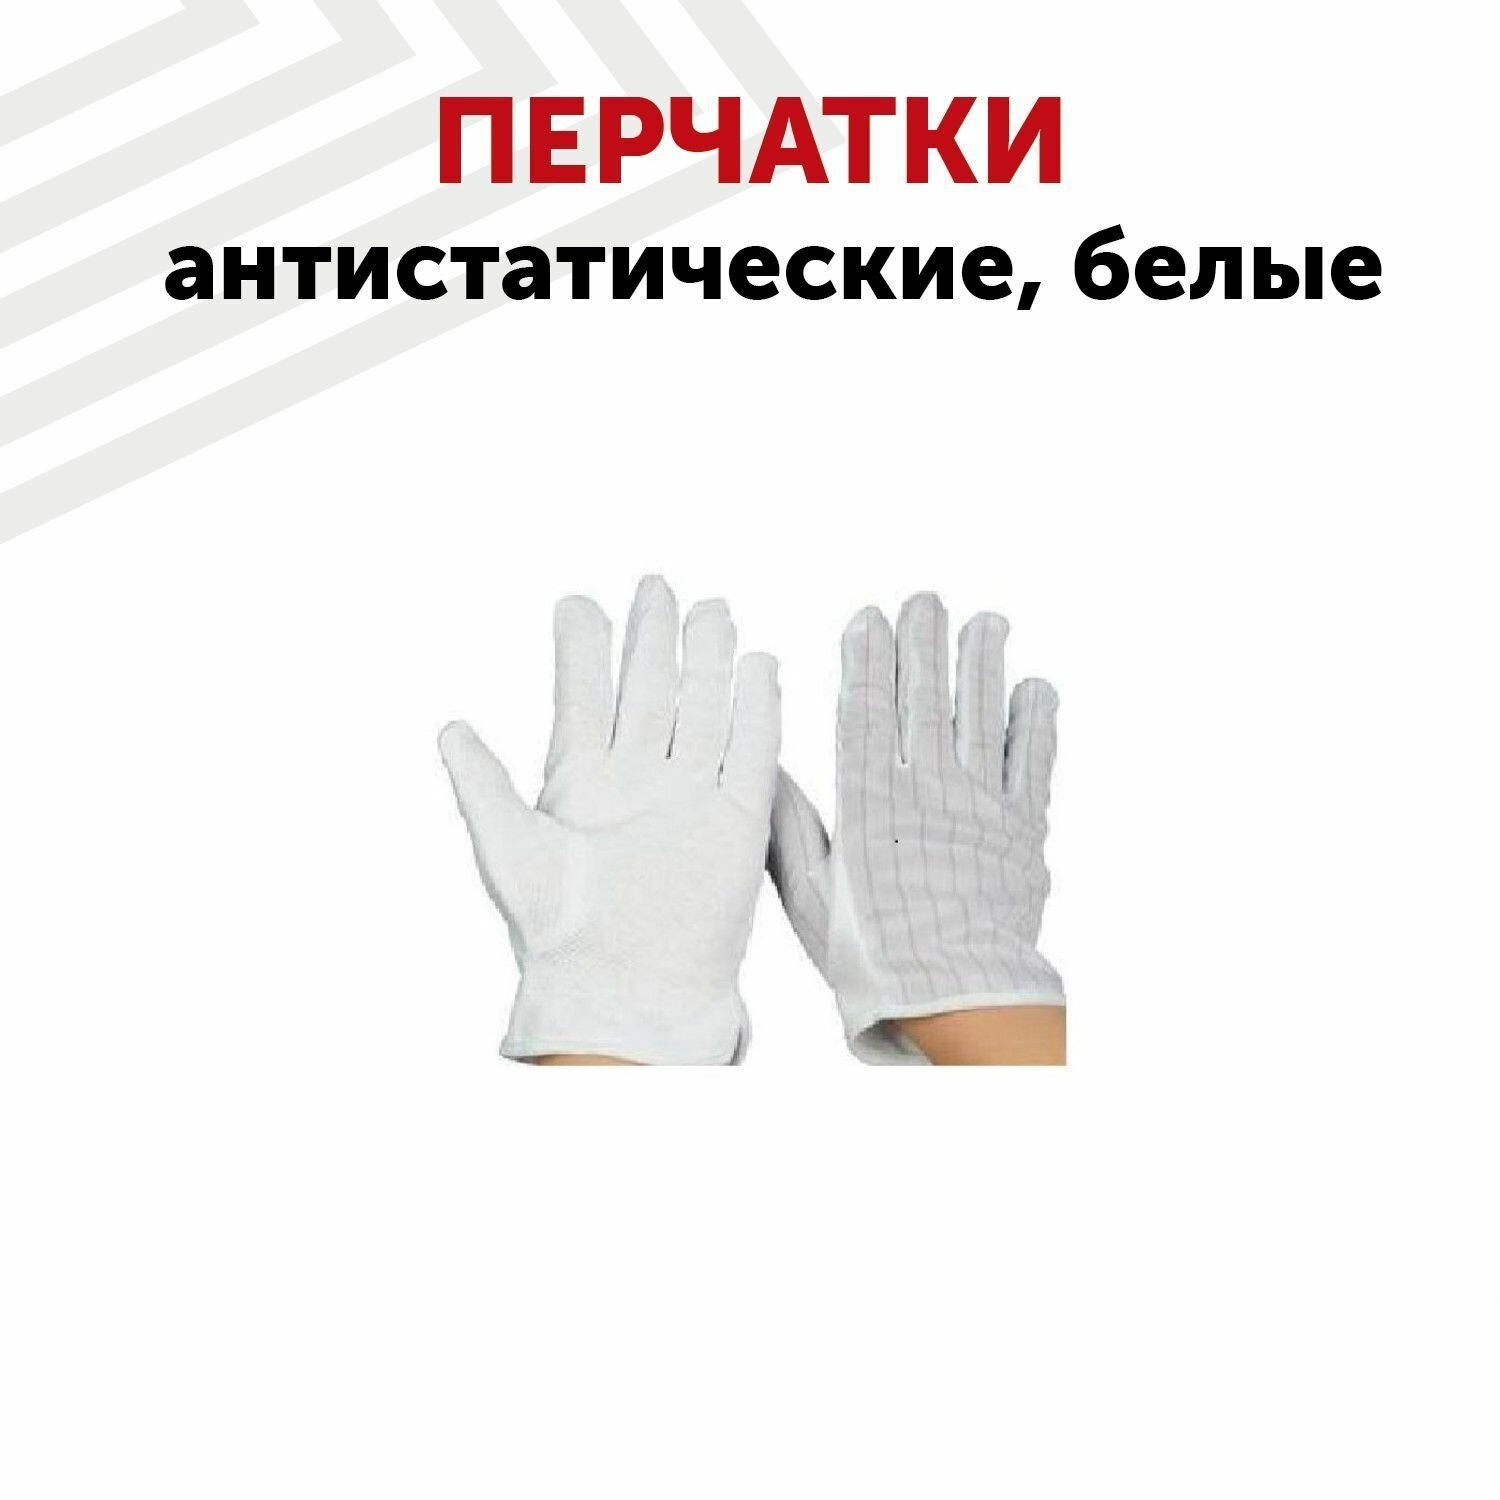 Перчатки антистатические, белые